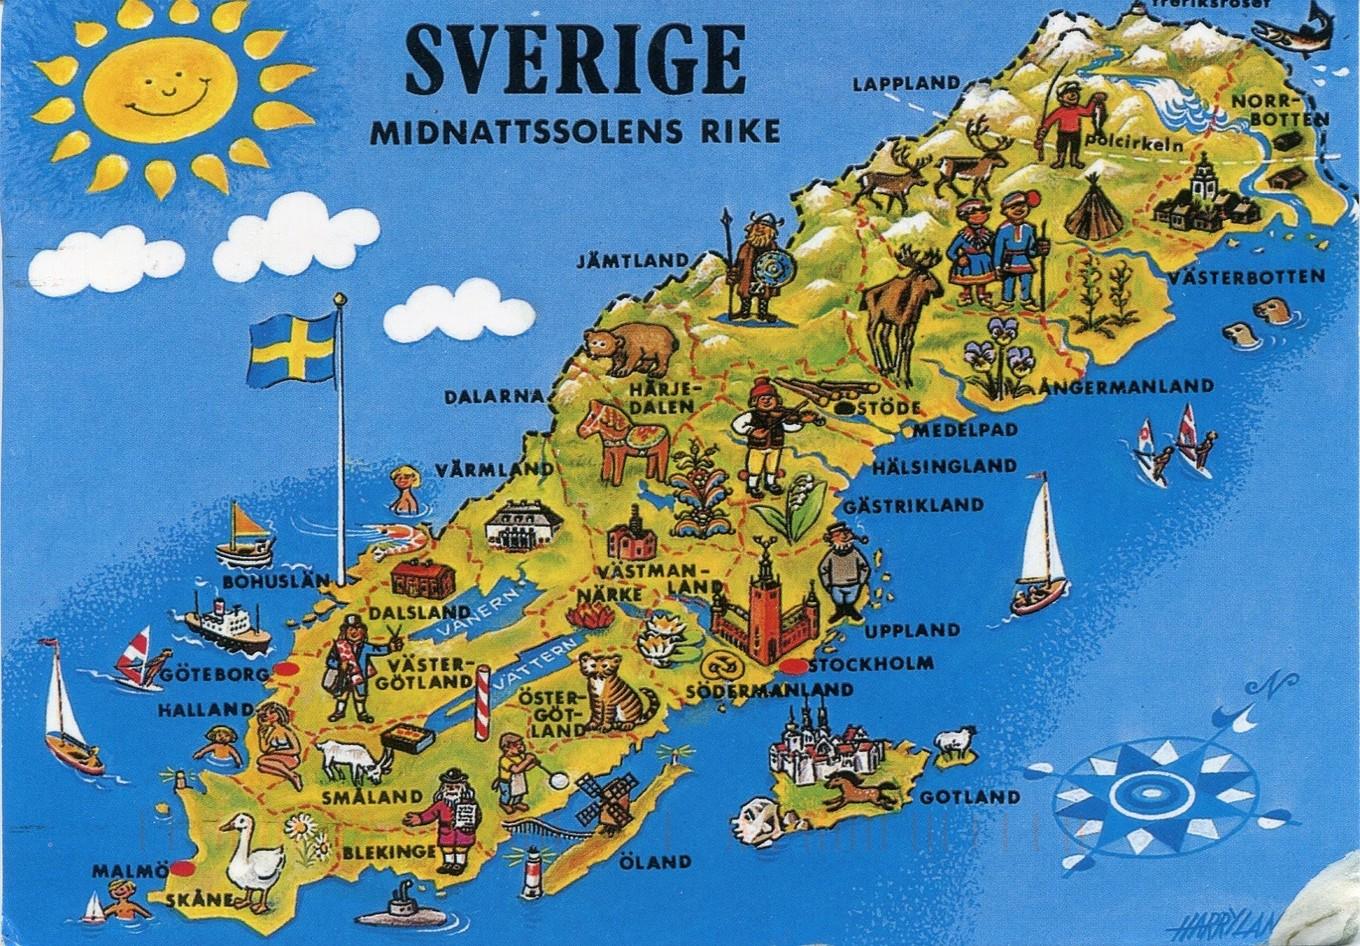 瑞典地理位置地图图片